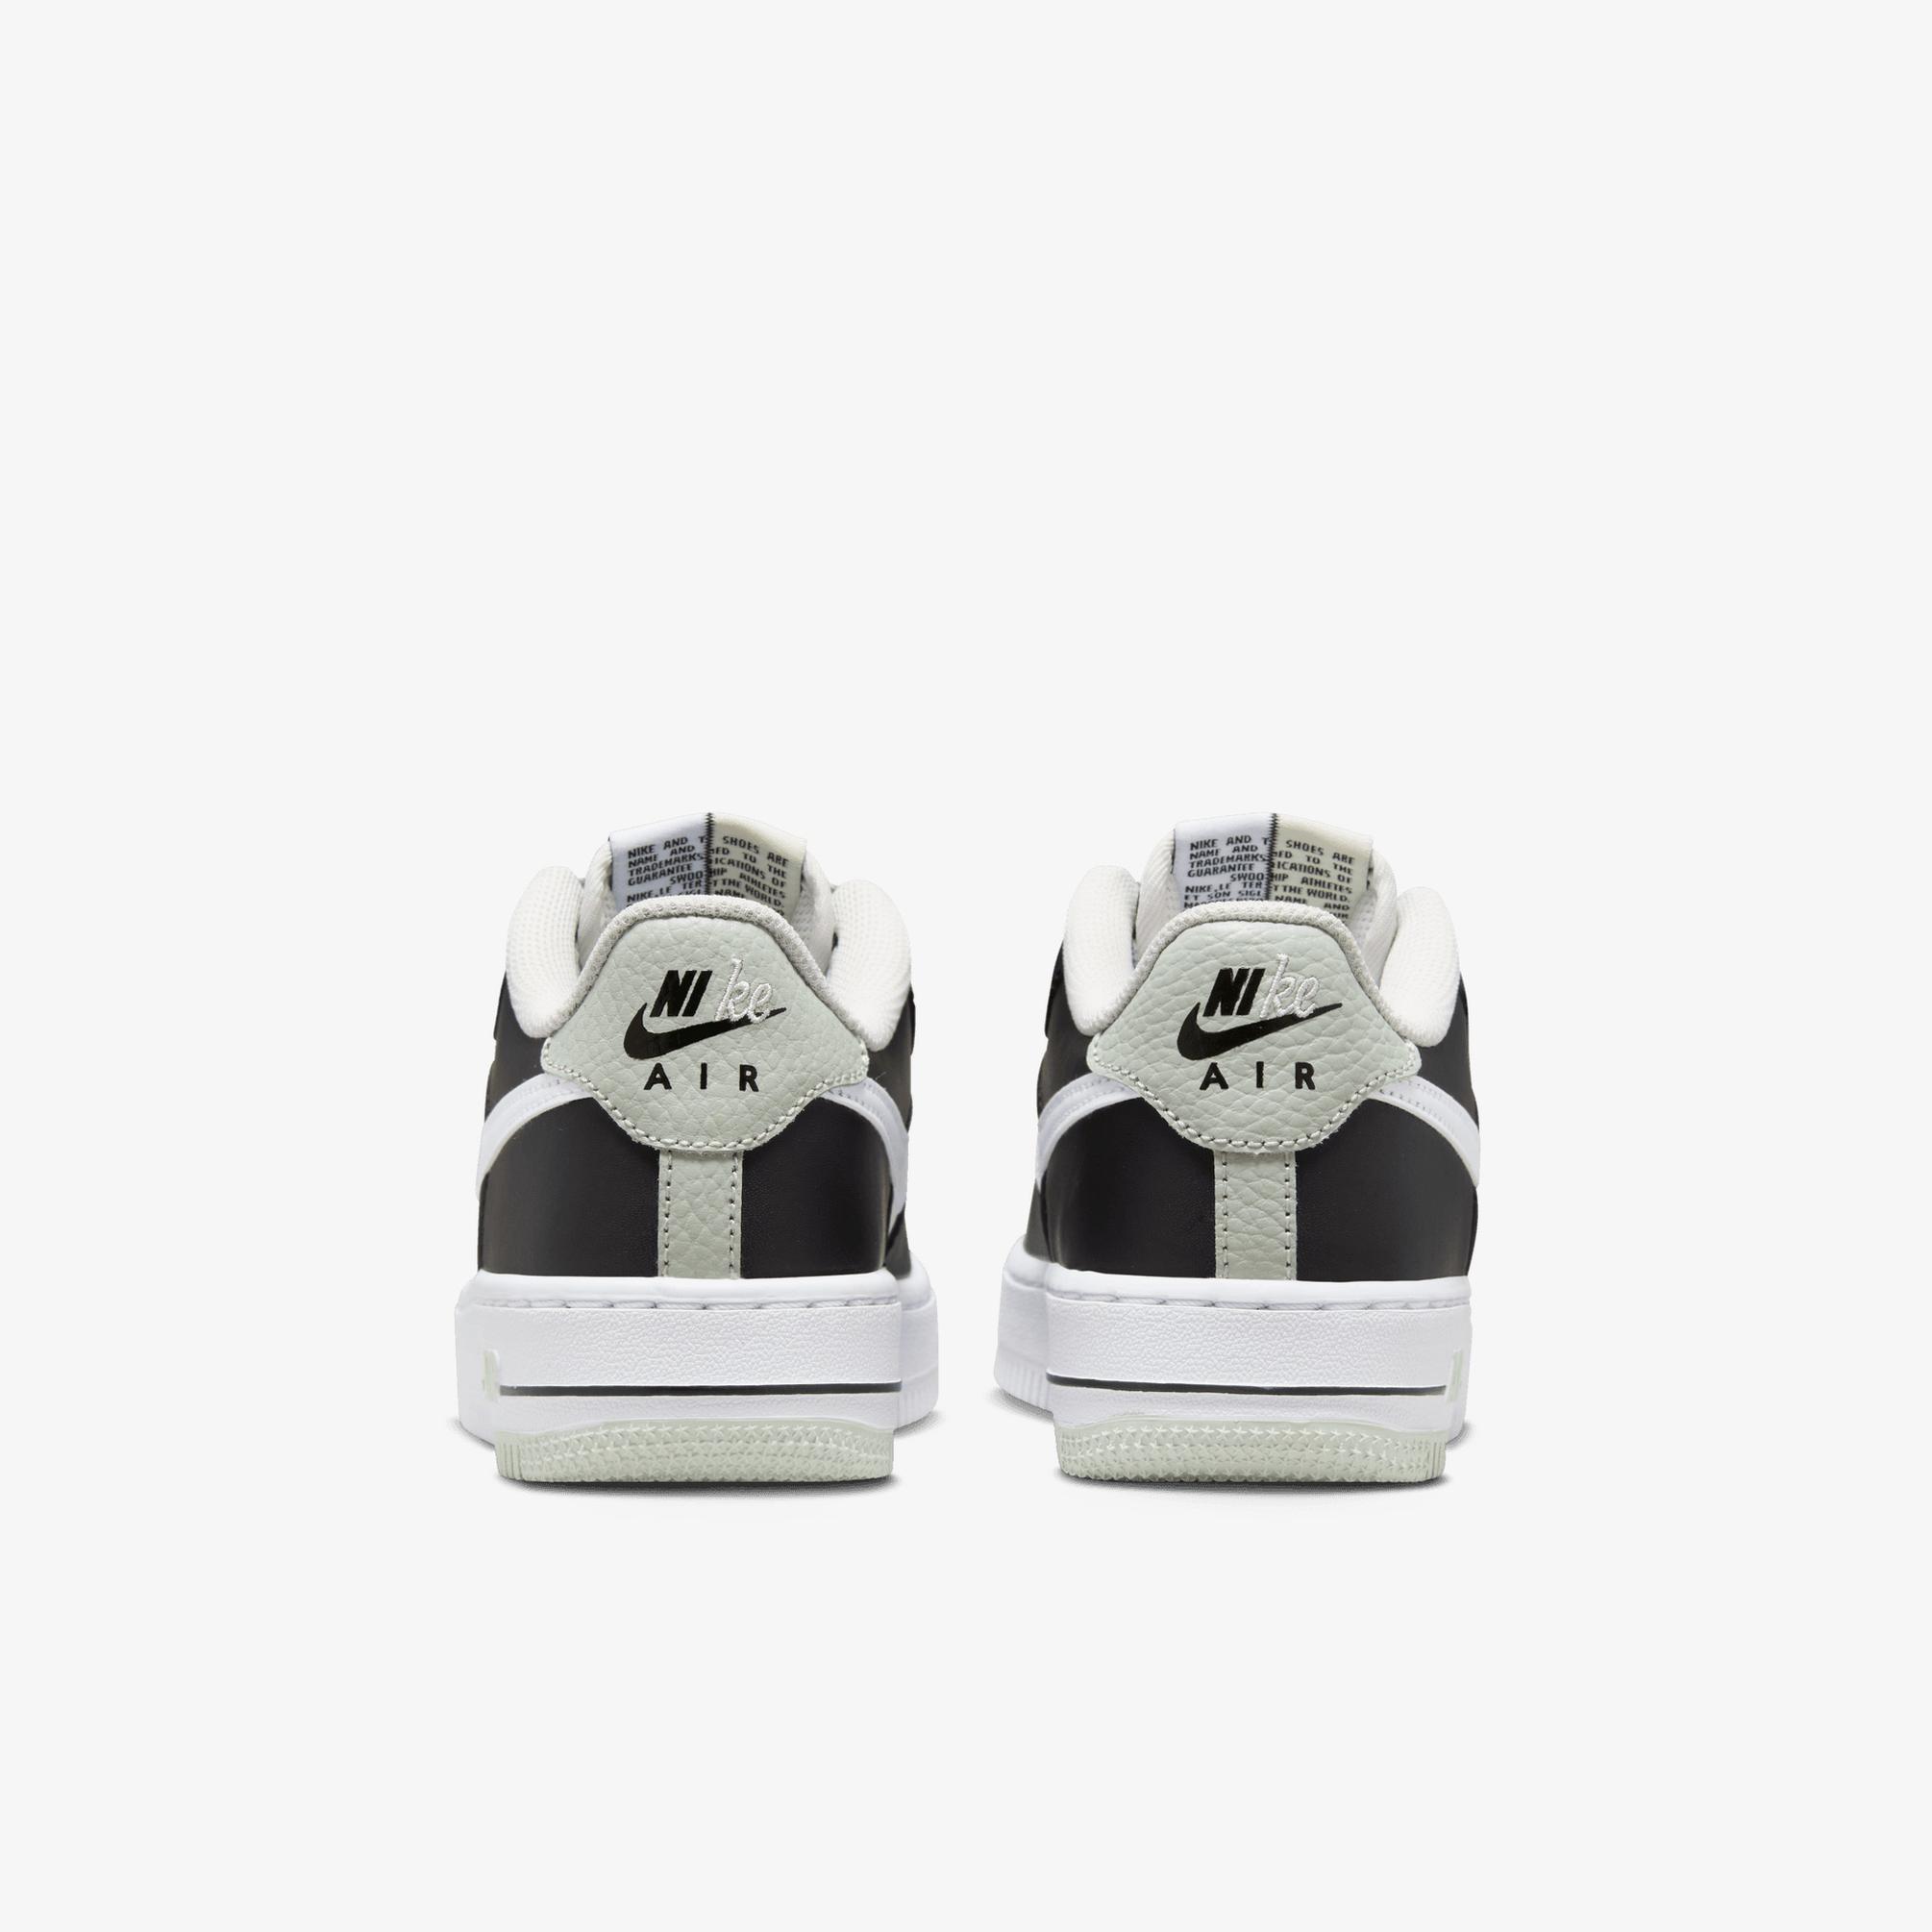  Nike Air Force 1 Lv8 1 Kadın Siyah/Beyaz Sneaker